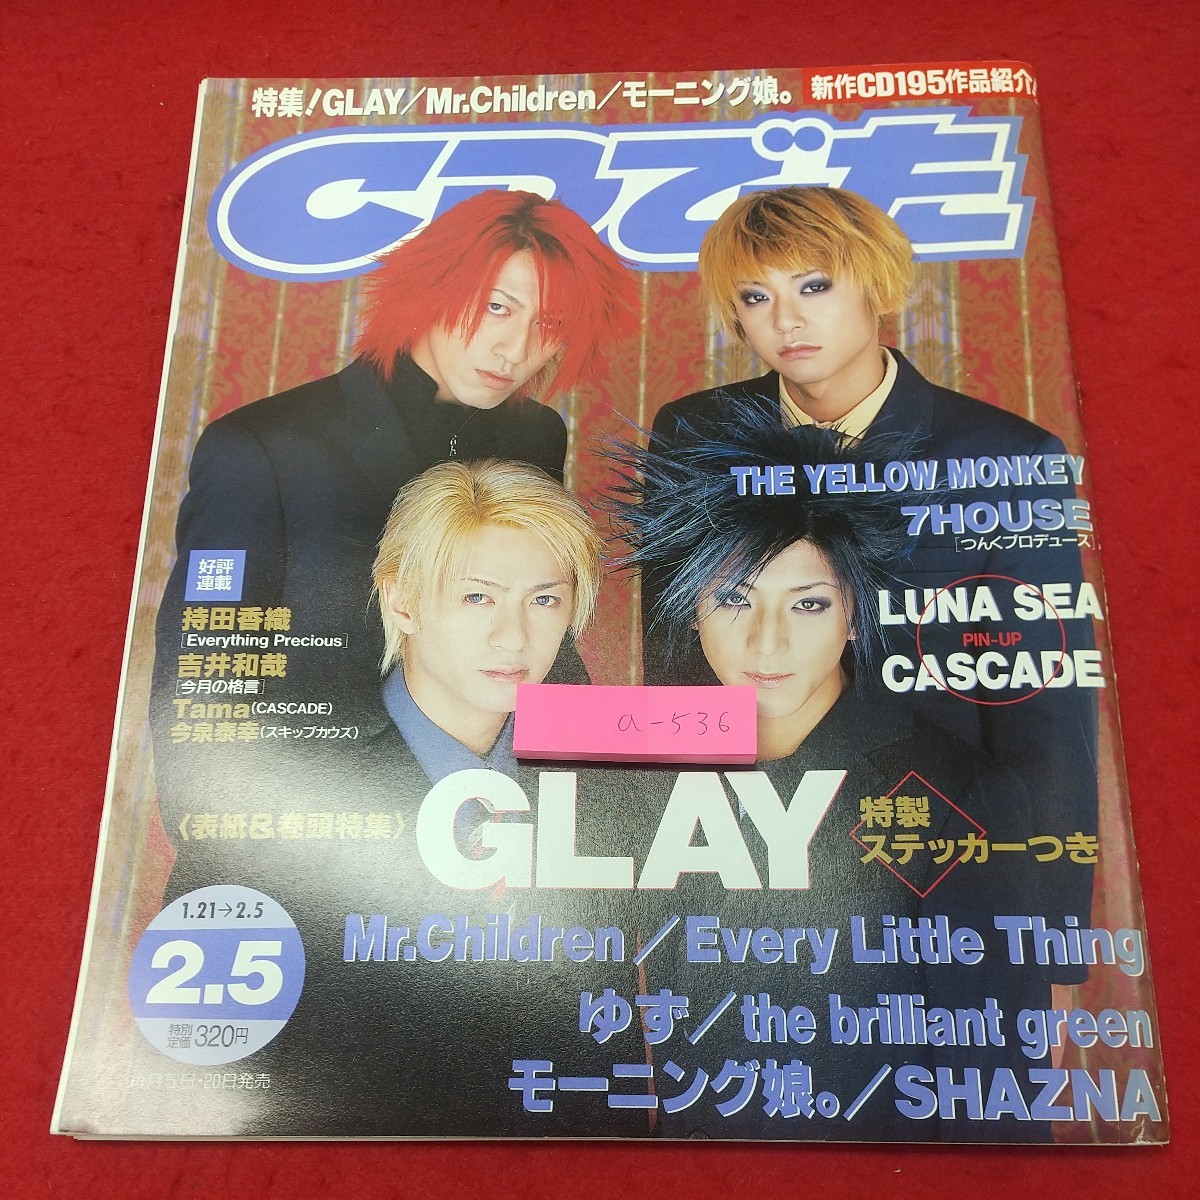 A-536 * 2 CDS 5 февраля 1999 г. Нет Приложения, опубликовано 5 февраля 1999 г. Кадокава книжный магазин музыкальный художник Glay Luna Sea Yuzu Morning Musume.